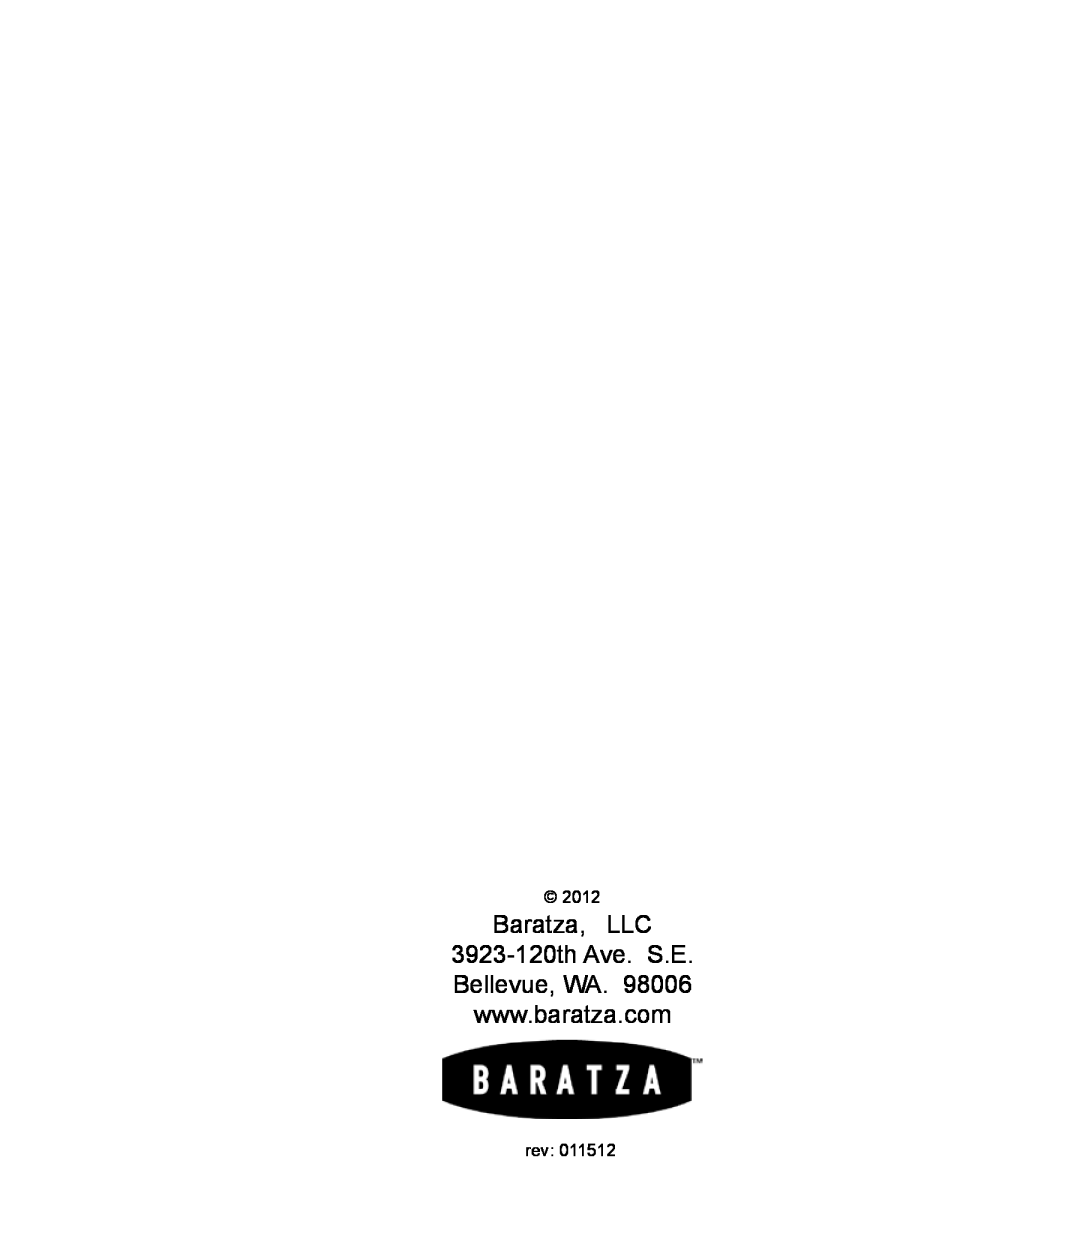 Baratza G385 manual Baratza, LLC 3923-120th Ave. S.E Bellevue, WA, 2012 